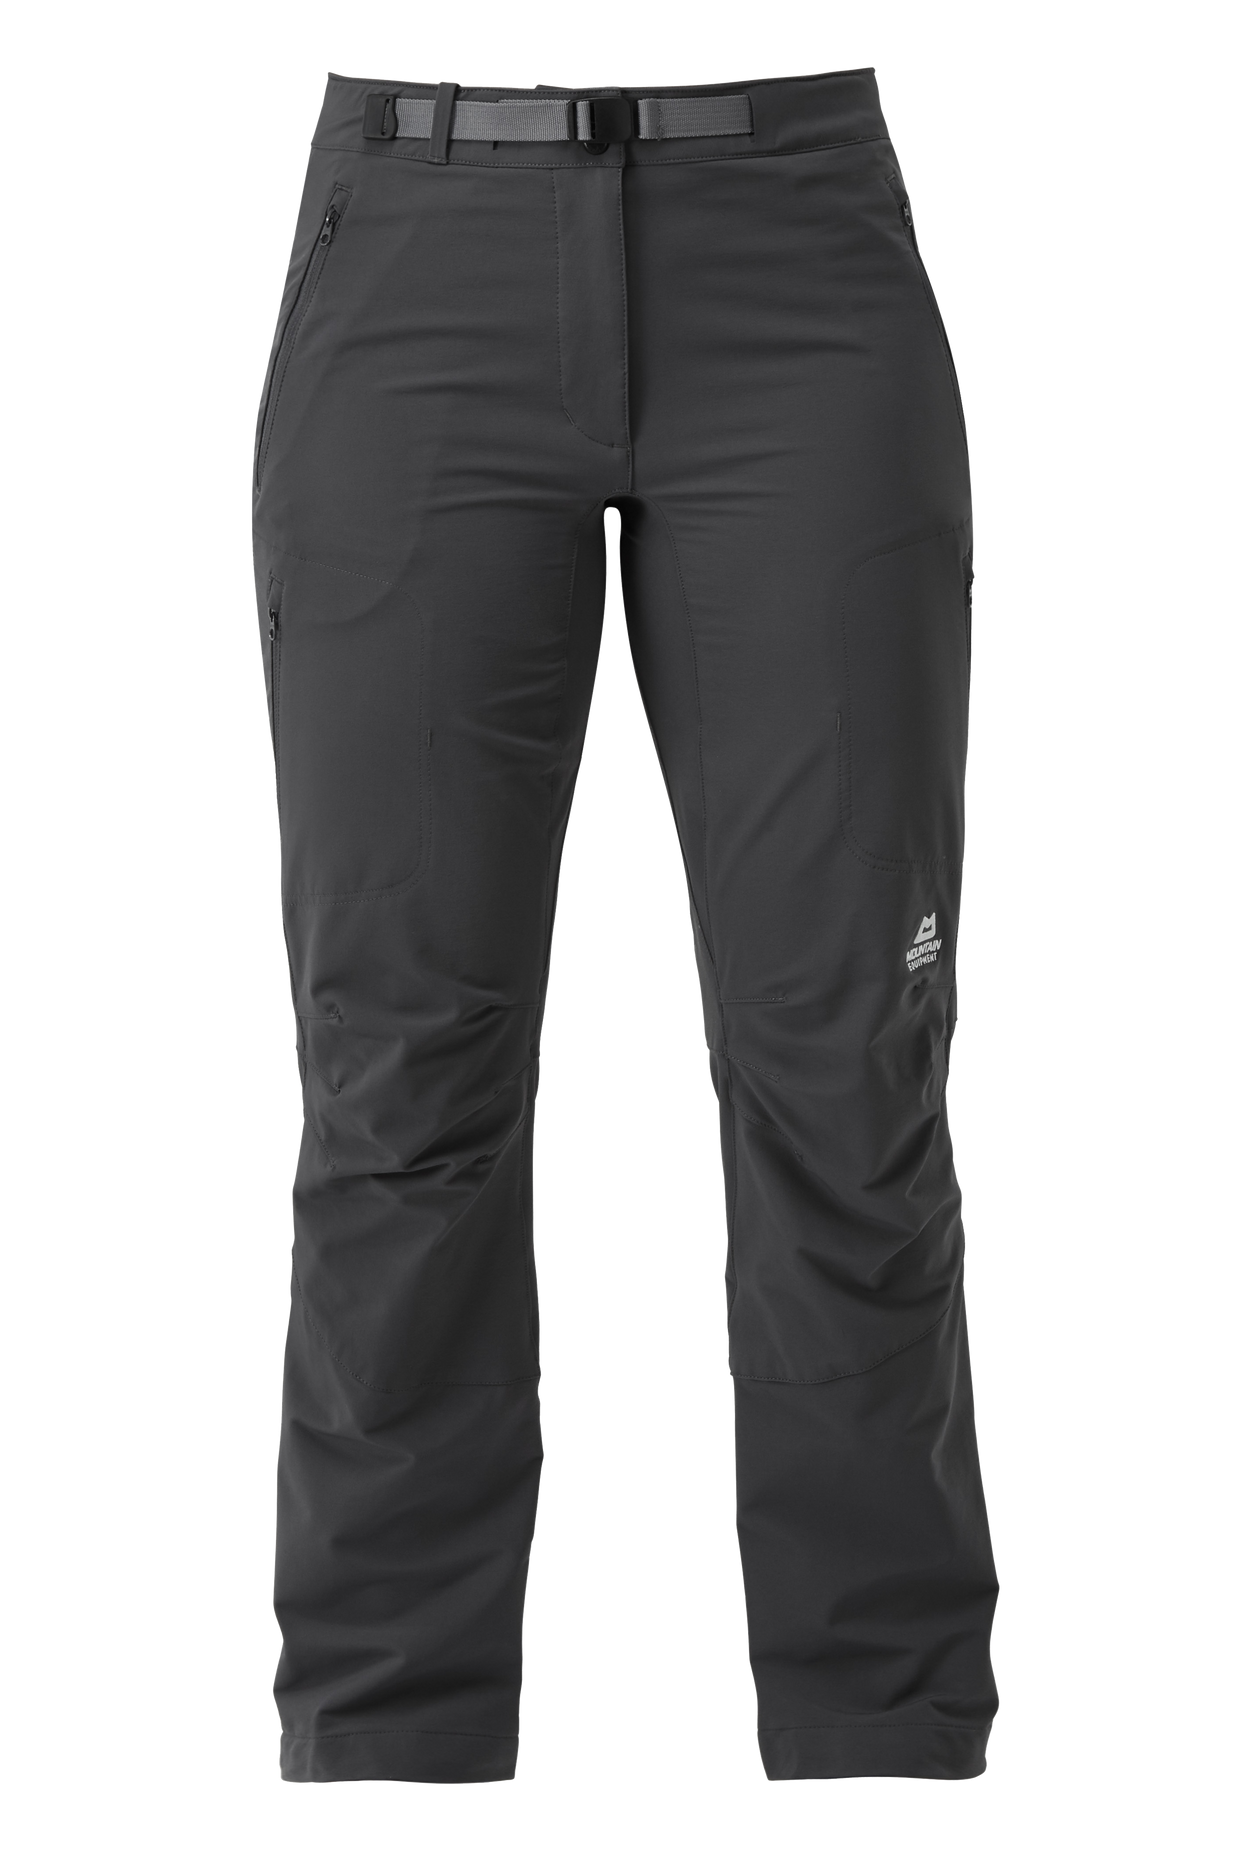 Mountain Equipment dámské softshellové kalhoty Chamois Wmns Pant - prodloužené Barva: Anvil Grey, Velikost: 16/XL